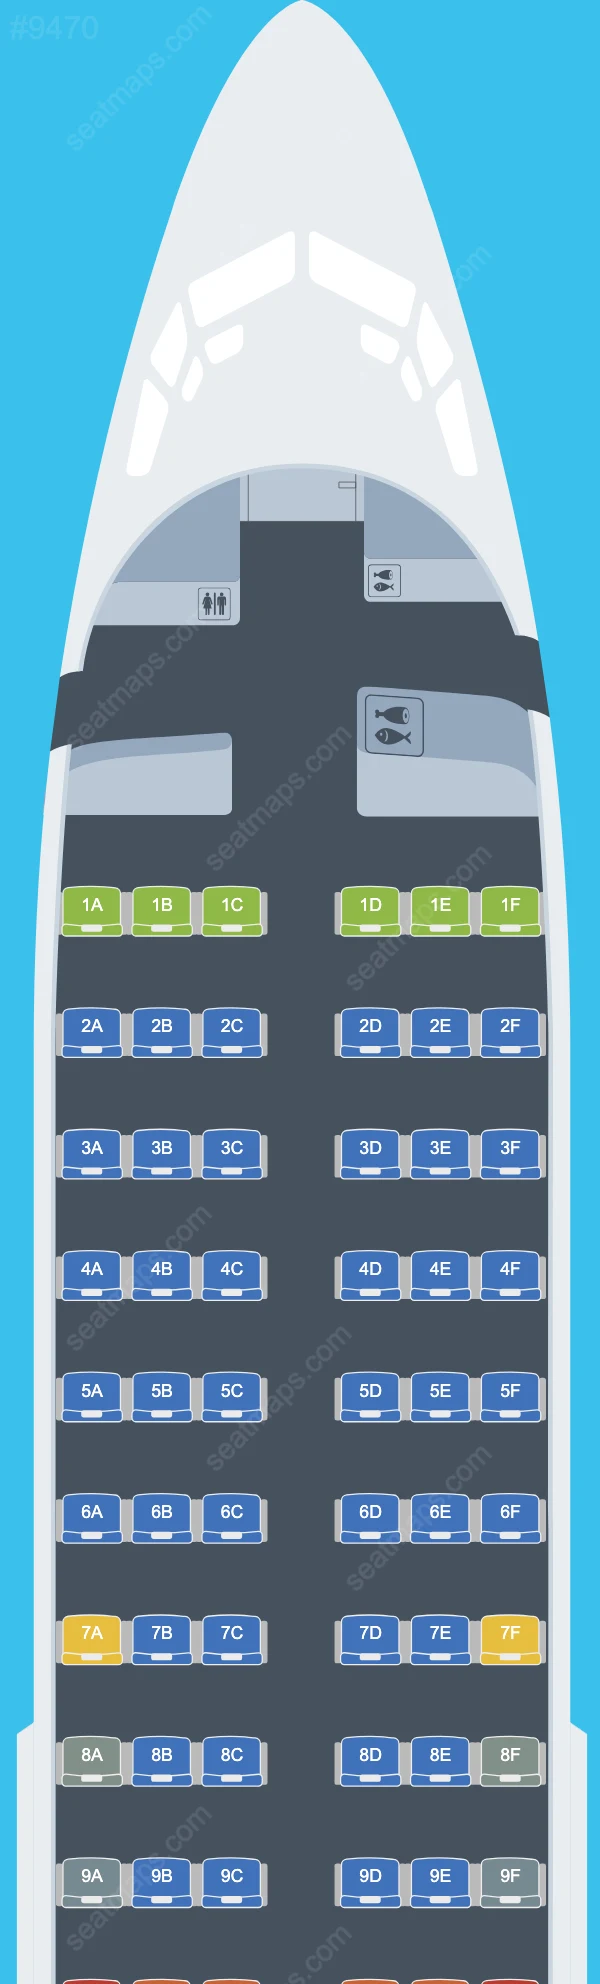 Bahamasair Boeing 737 Seat Maps 737-700